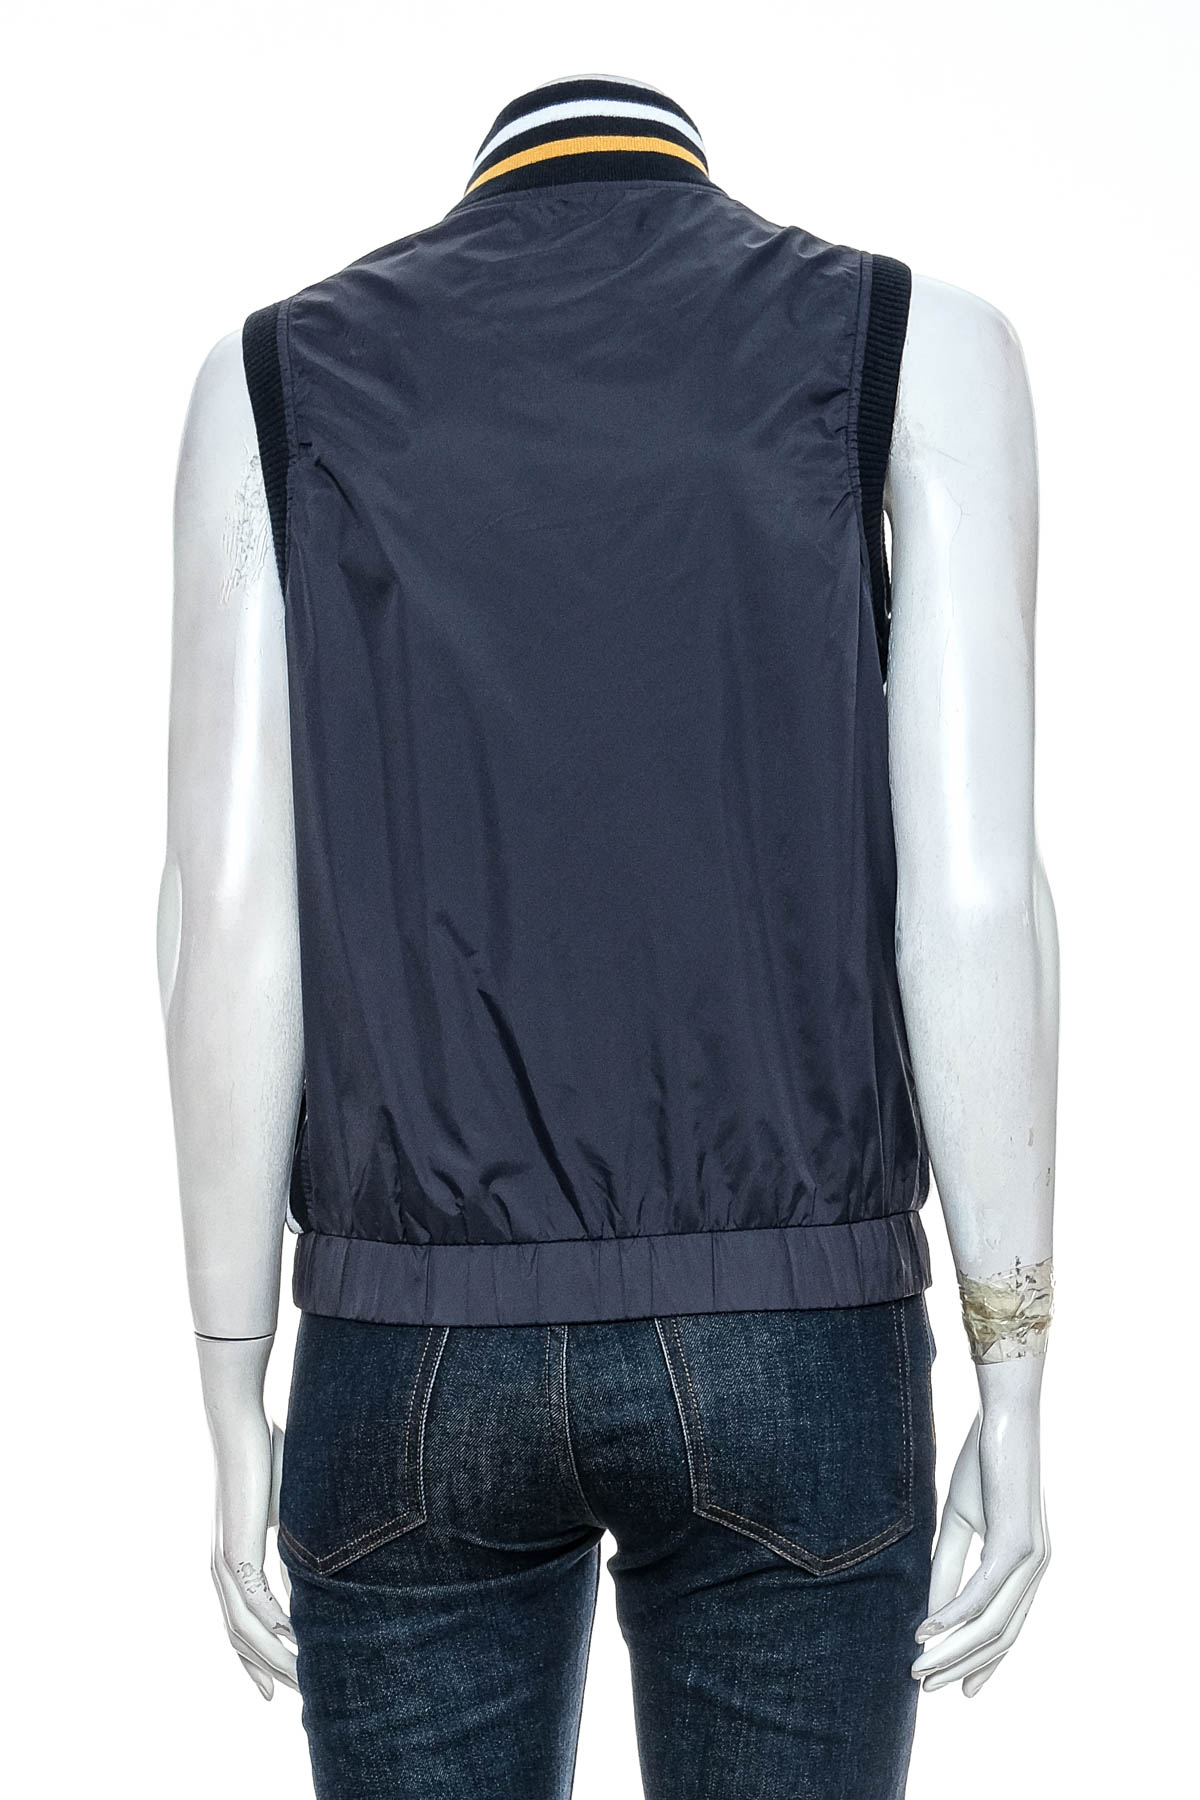 Women's vest - HAIYU - 1